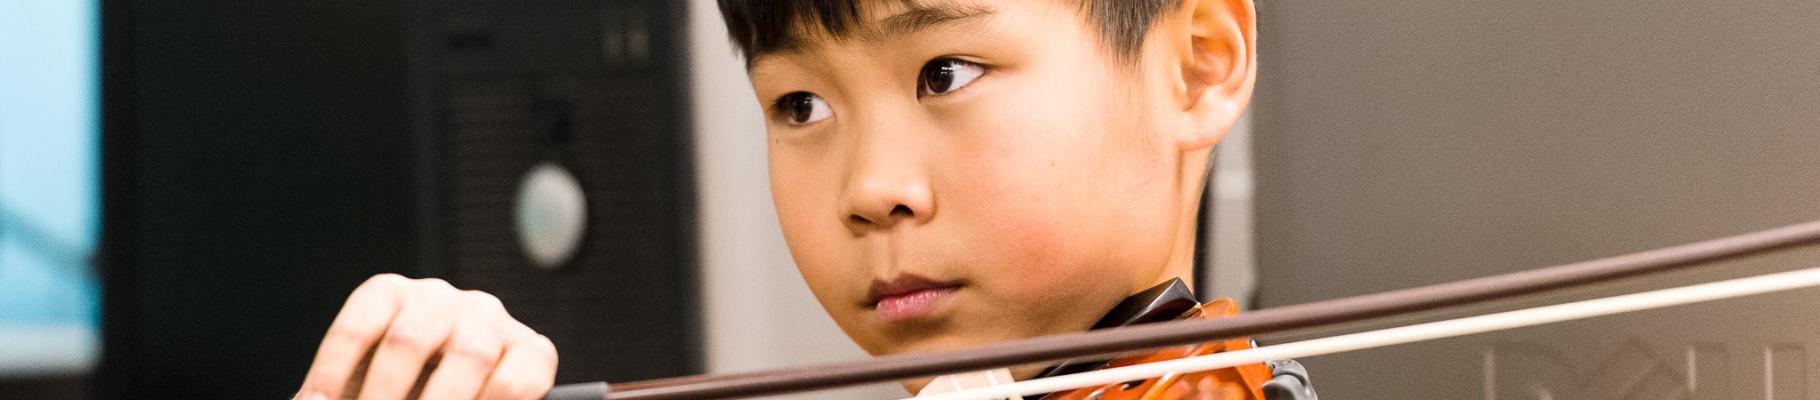 Boy focused with violin